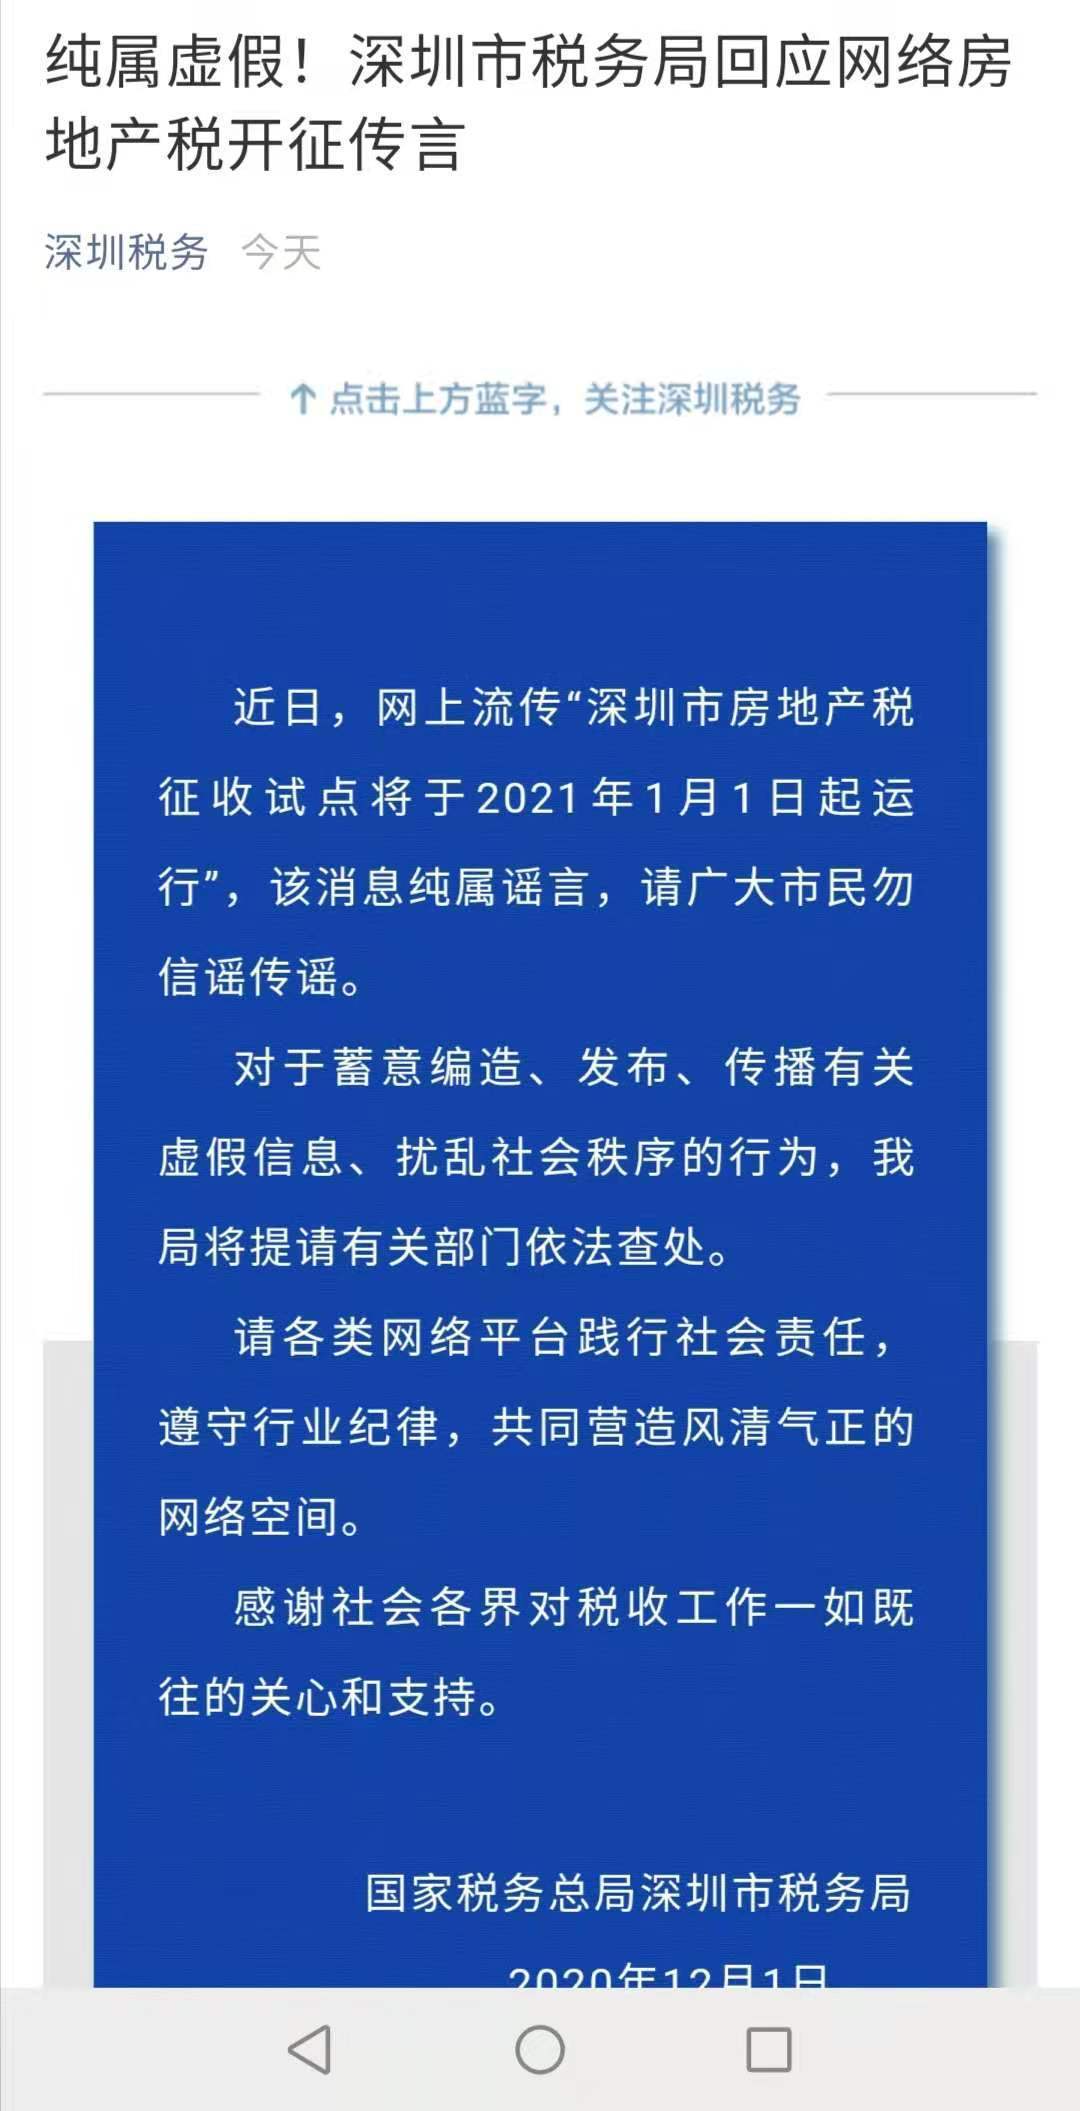 该局发布《纯属虚假！深圳市税务局回应网络 房地产 税开征传言》文章称